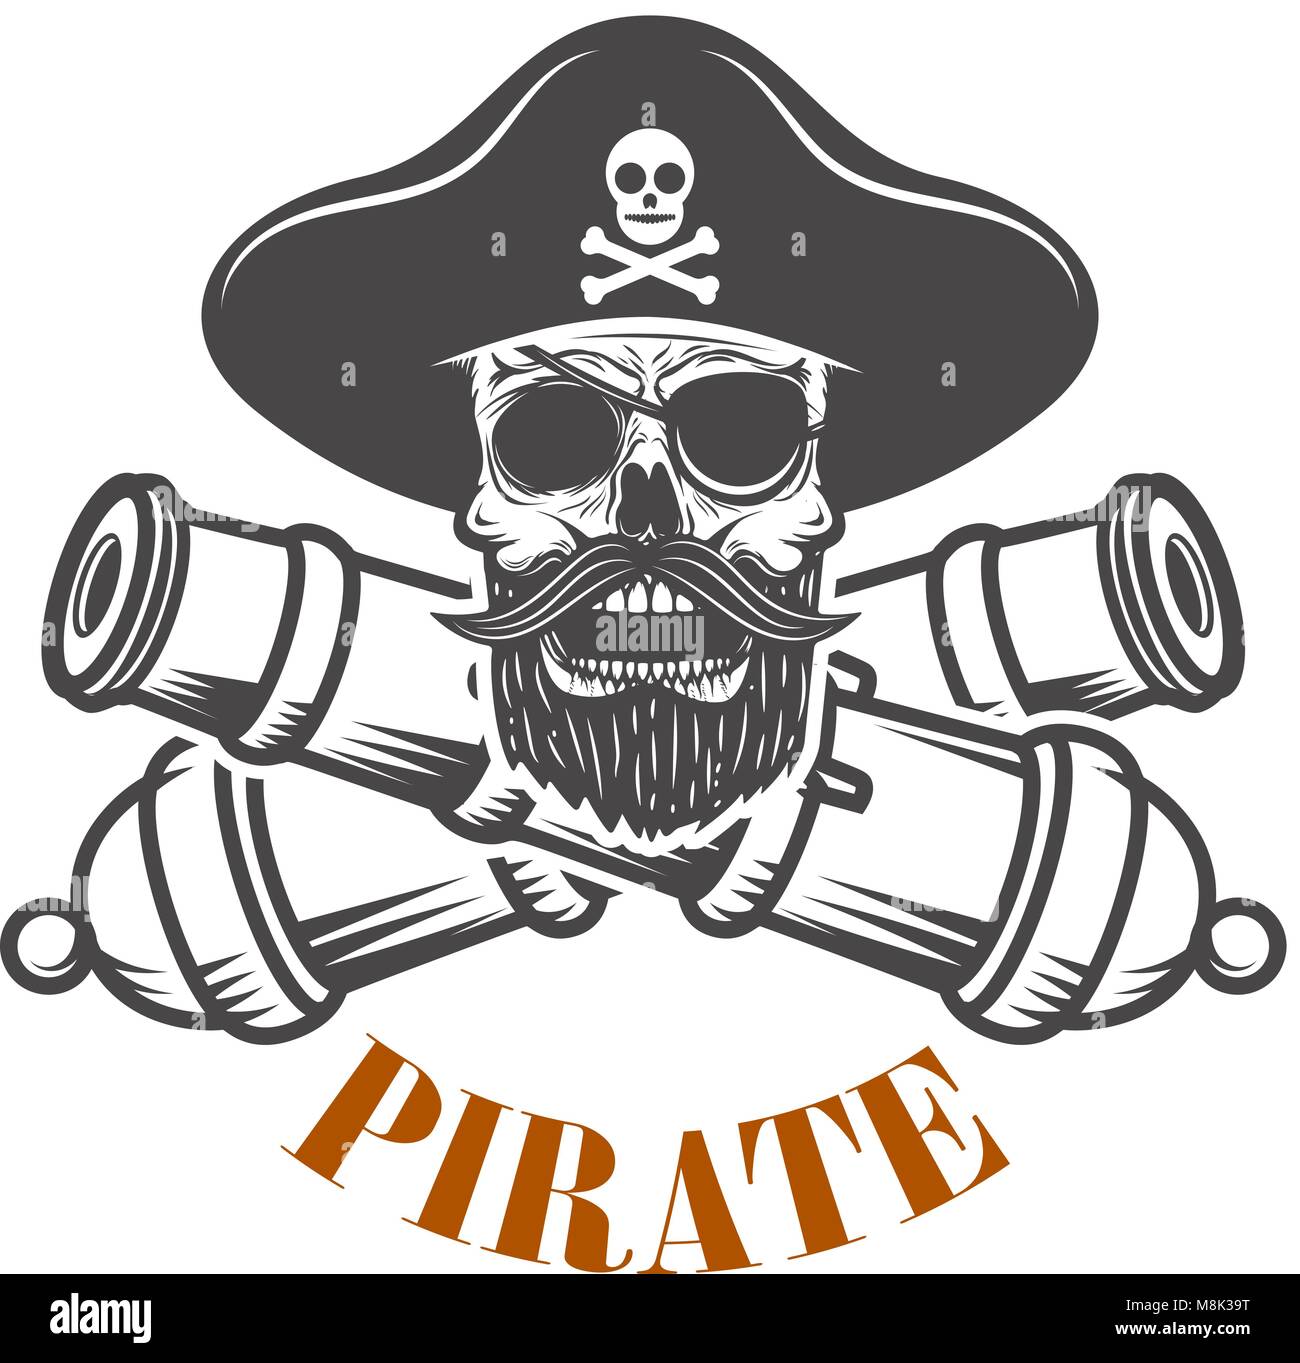 Piraten. Emblem Vorlage mit Kanonen und Pirat Totenkopf. Design Element für Logo, Label, Emblem, sign. Vector Illustration Stock Vektor